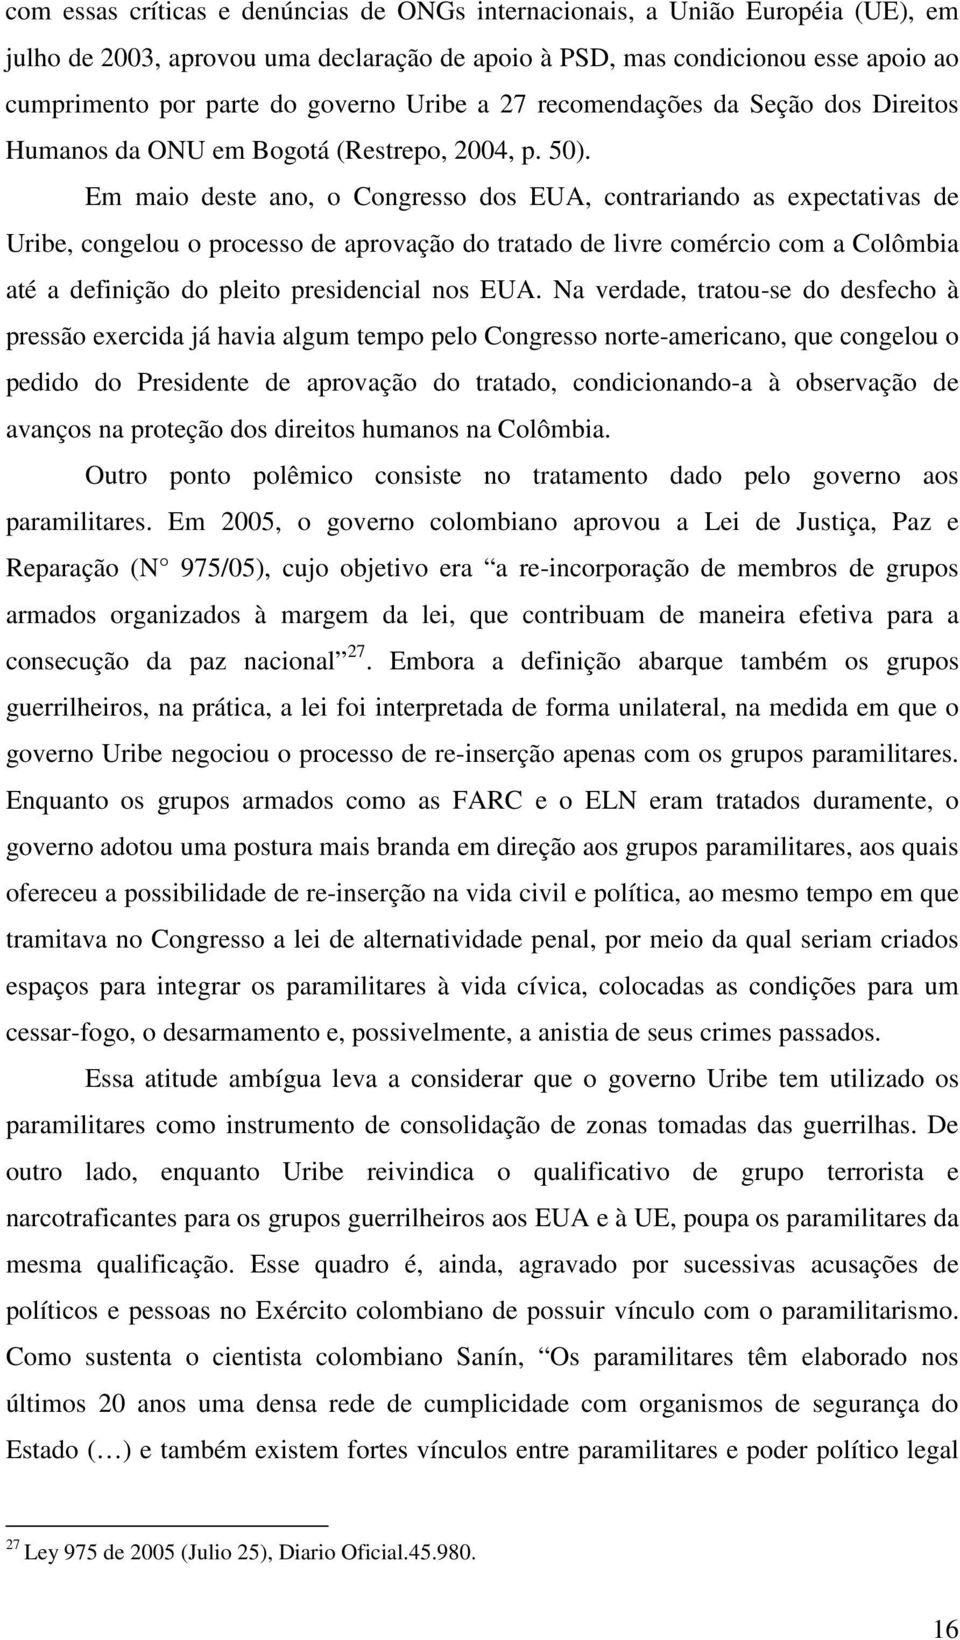 Em maio deste ano, o Congresso dos EUA, contrariando as expectativas de Uribe, congelou o processo de aprovação do tratado de livre comércio com a Colômbia até a definição do pleito presidencial nos